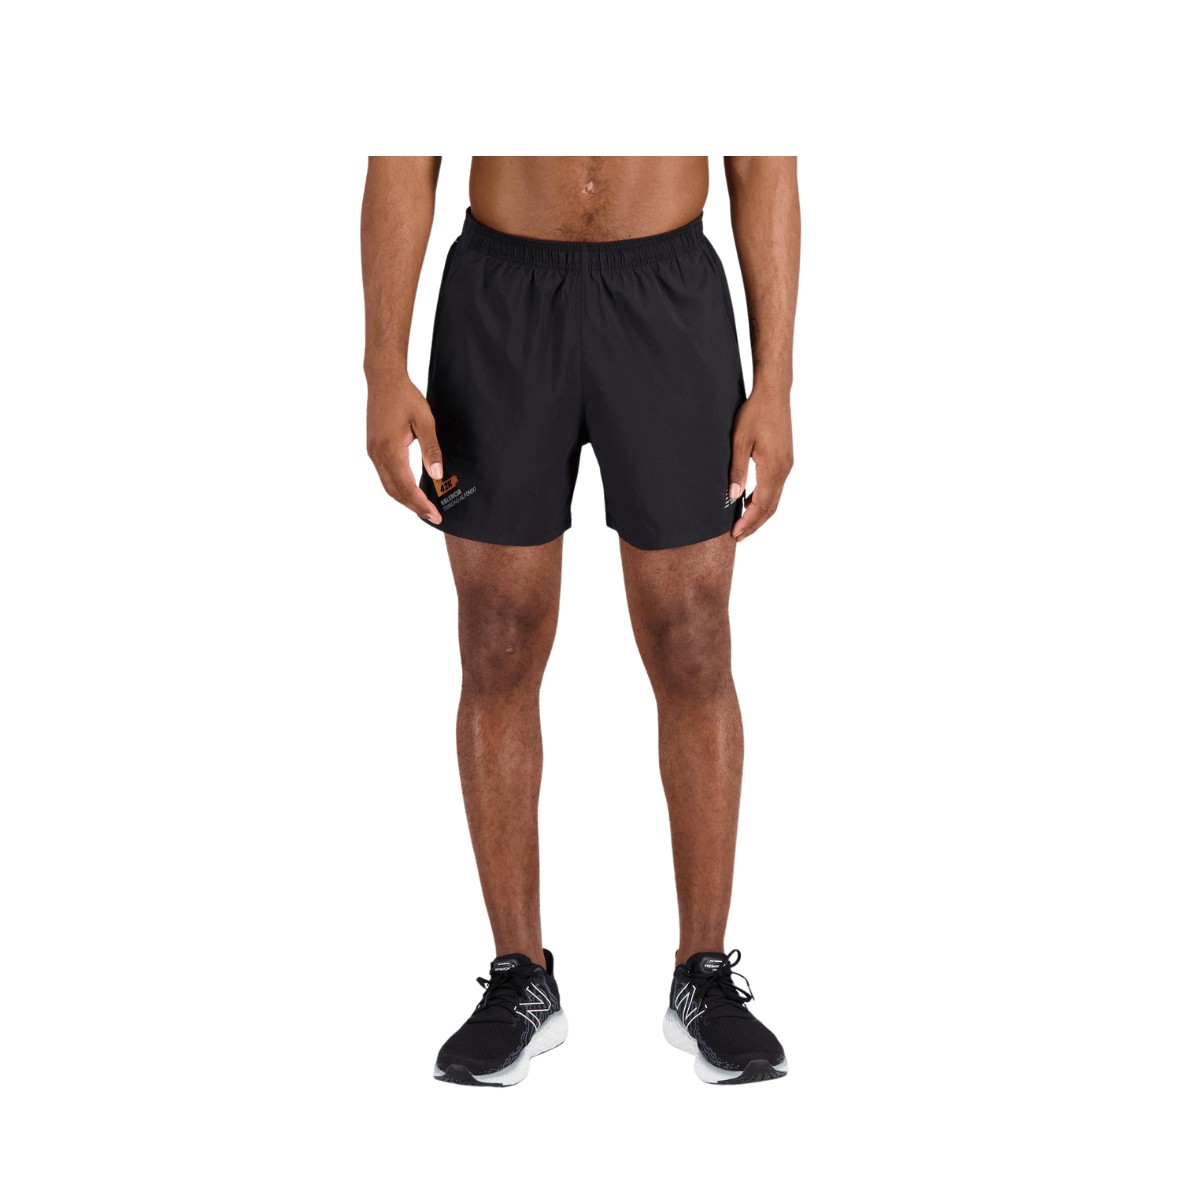 Shorts, New Balance Accelerate 5 polegadas Preto, Tamanho S